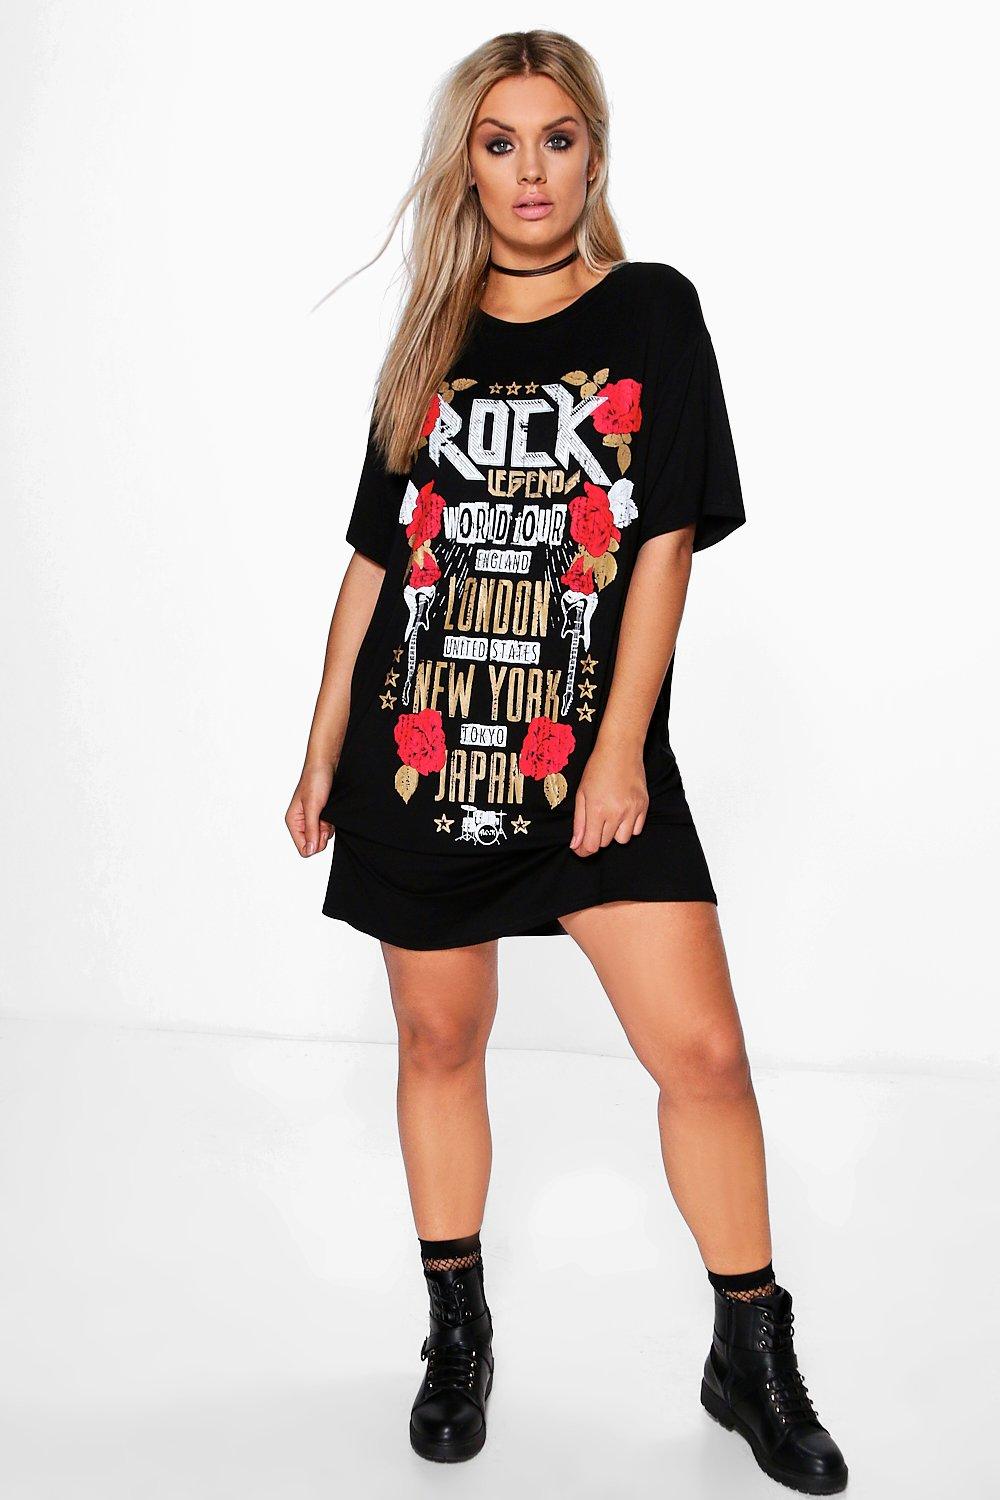 Rock T Shirt Dress Hotsell, 56% OFF ...